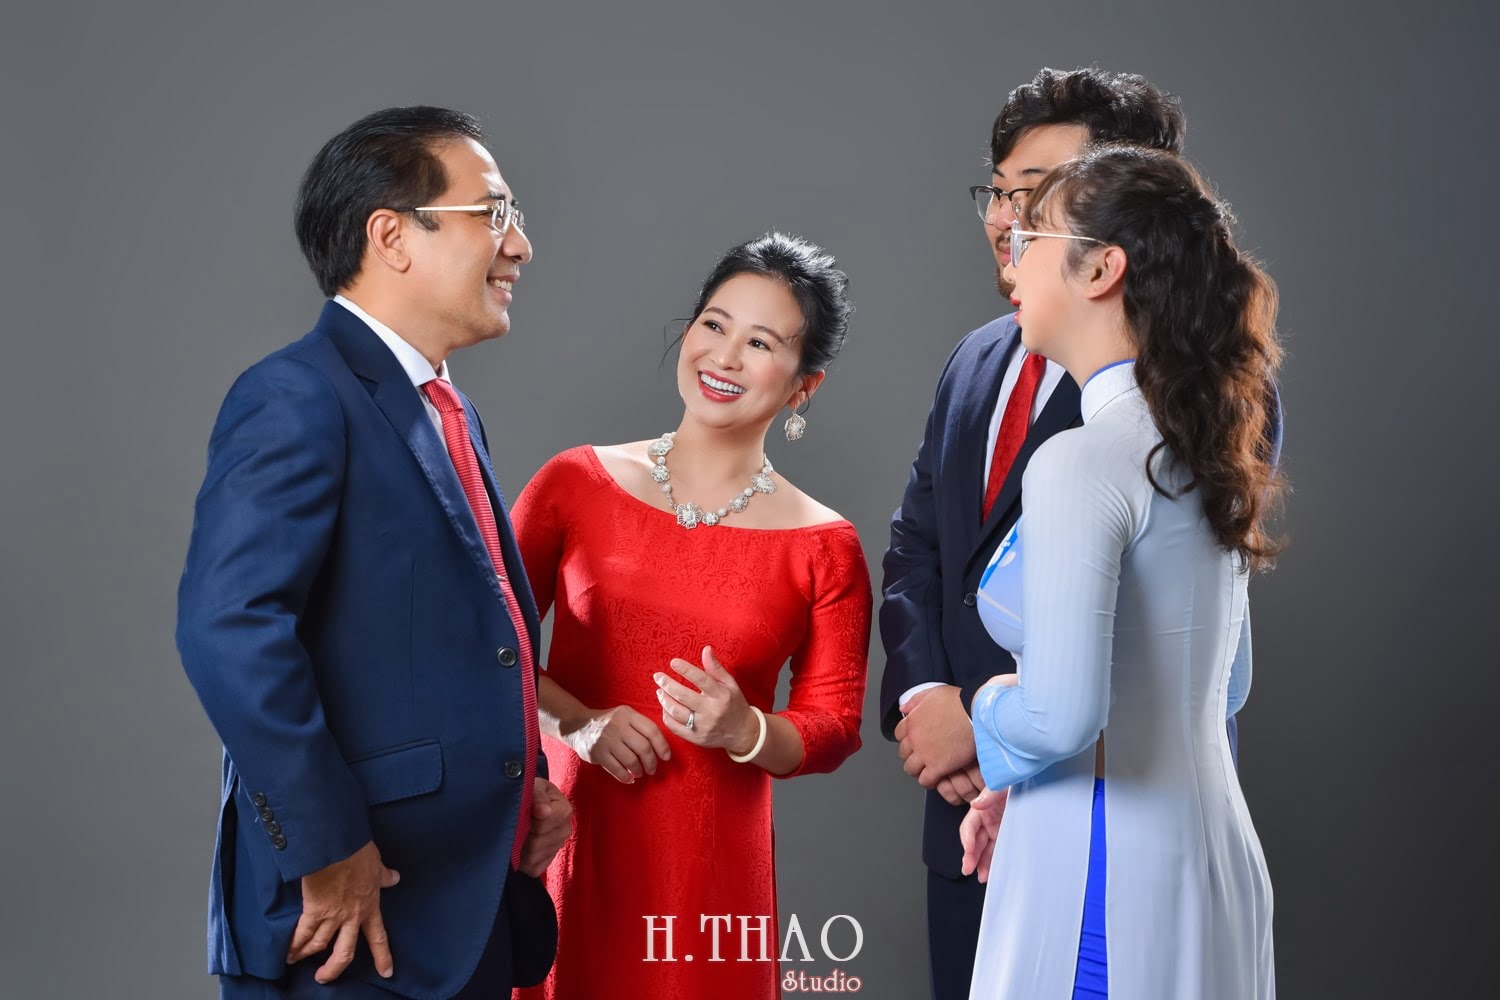 Anh gia dinh 4 nguoi 10 min - Dịch vụ chụp ảnh kỷ niệm ngày cưới - HThao Studio